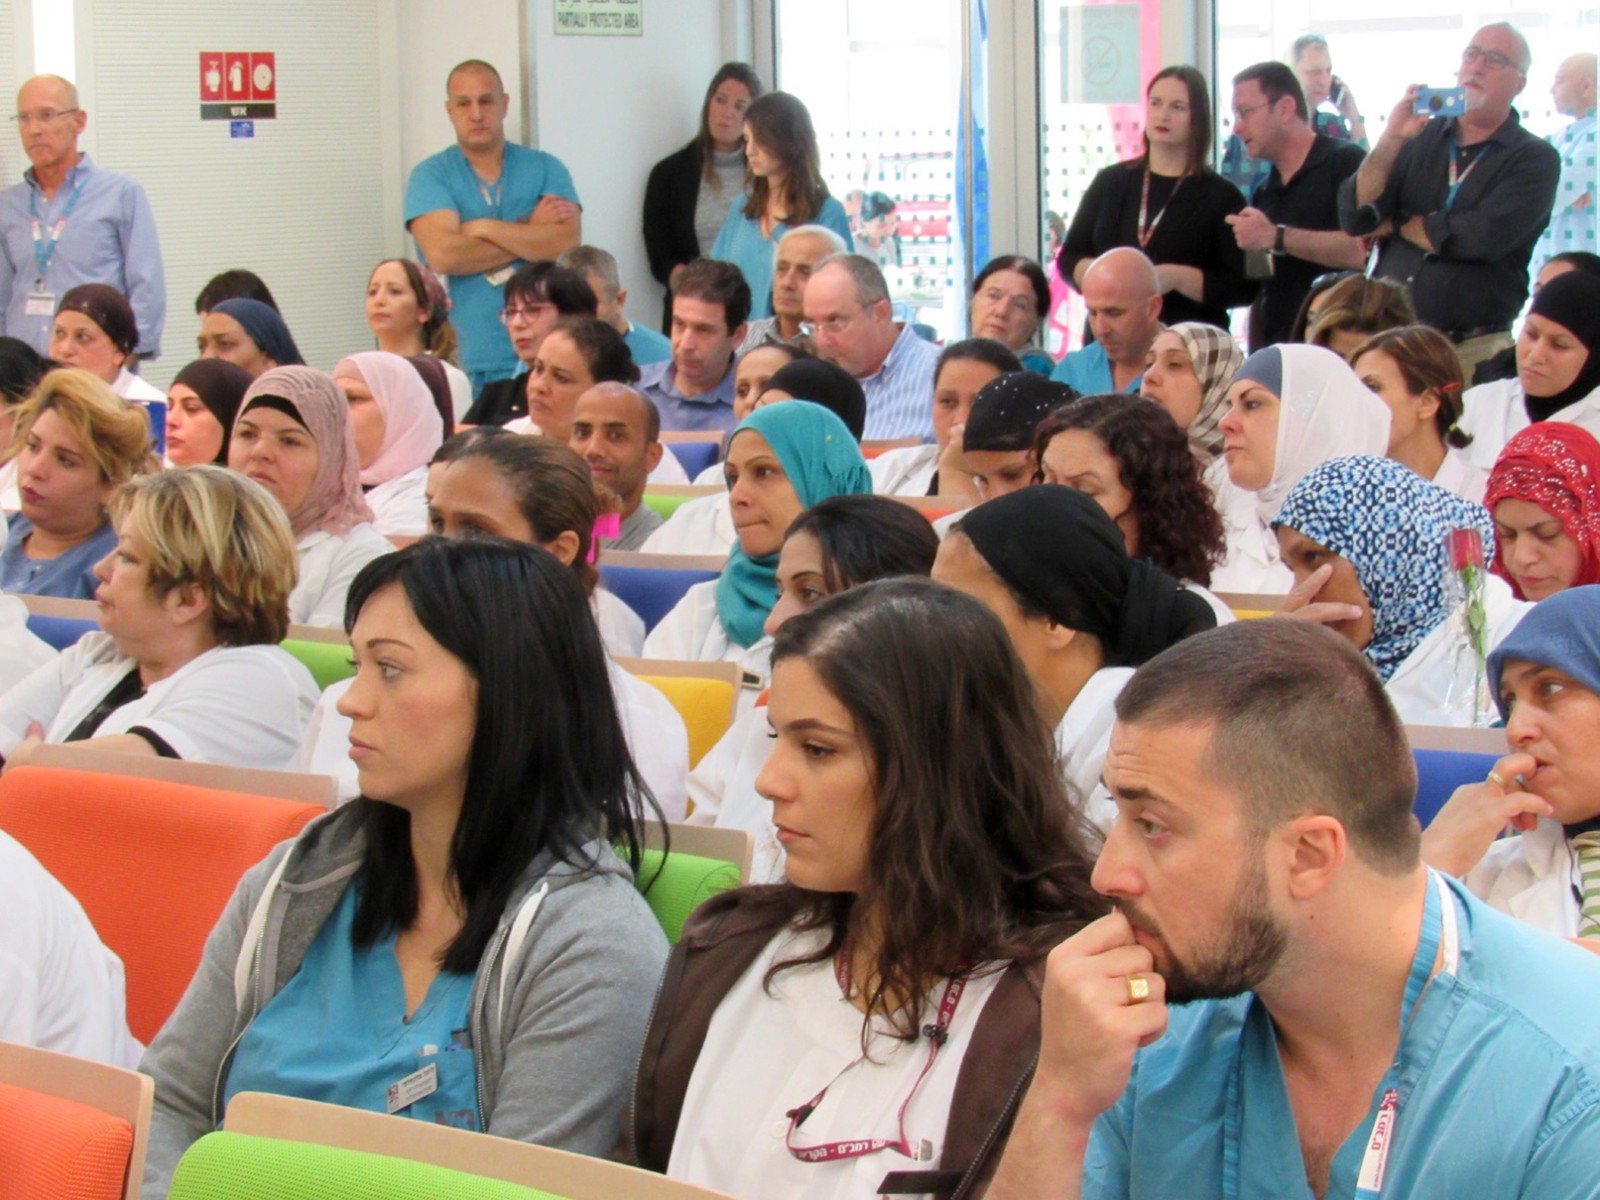 כ-220 עובדי קבלן נקלטו להעסקה ישירה בקריה הרפואית רמב"ם בחיפה, 23 בנובמבר 2016 (צילום: ארז רביב)